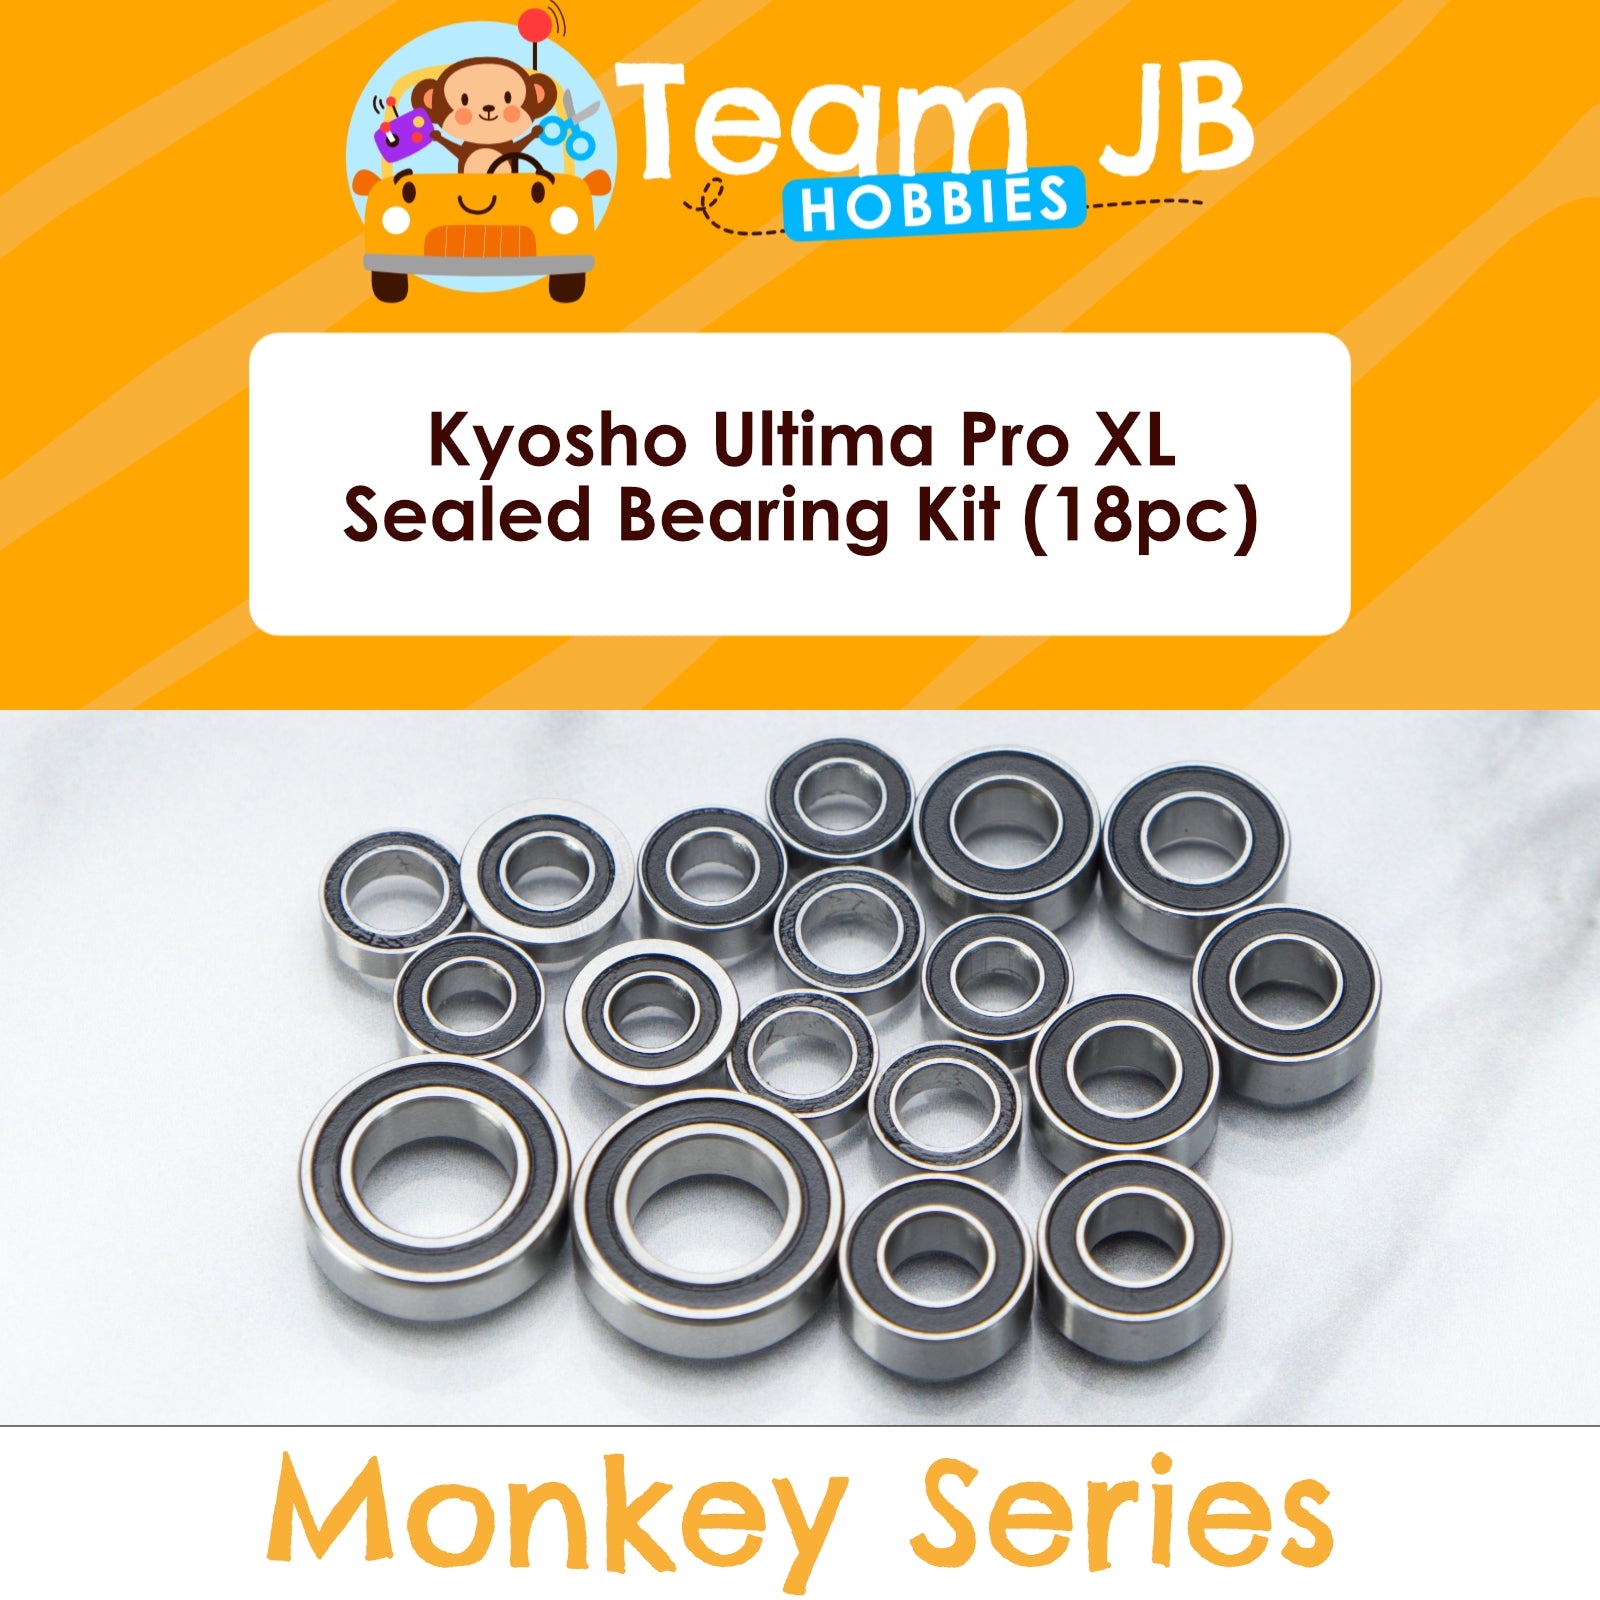 Kyosho Ultima Pro XL - Sealed Bearing Kit